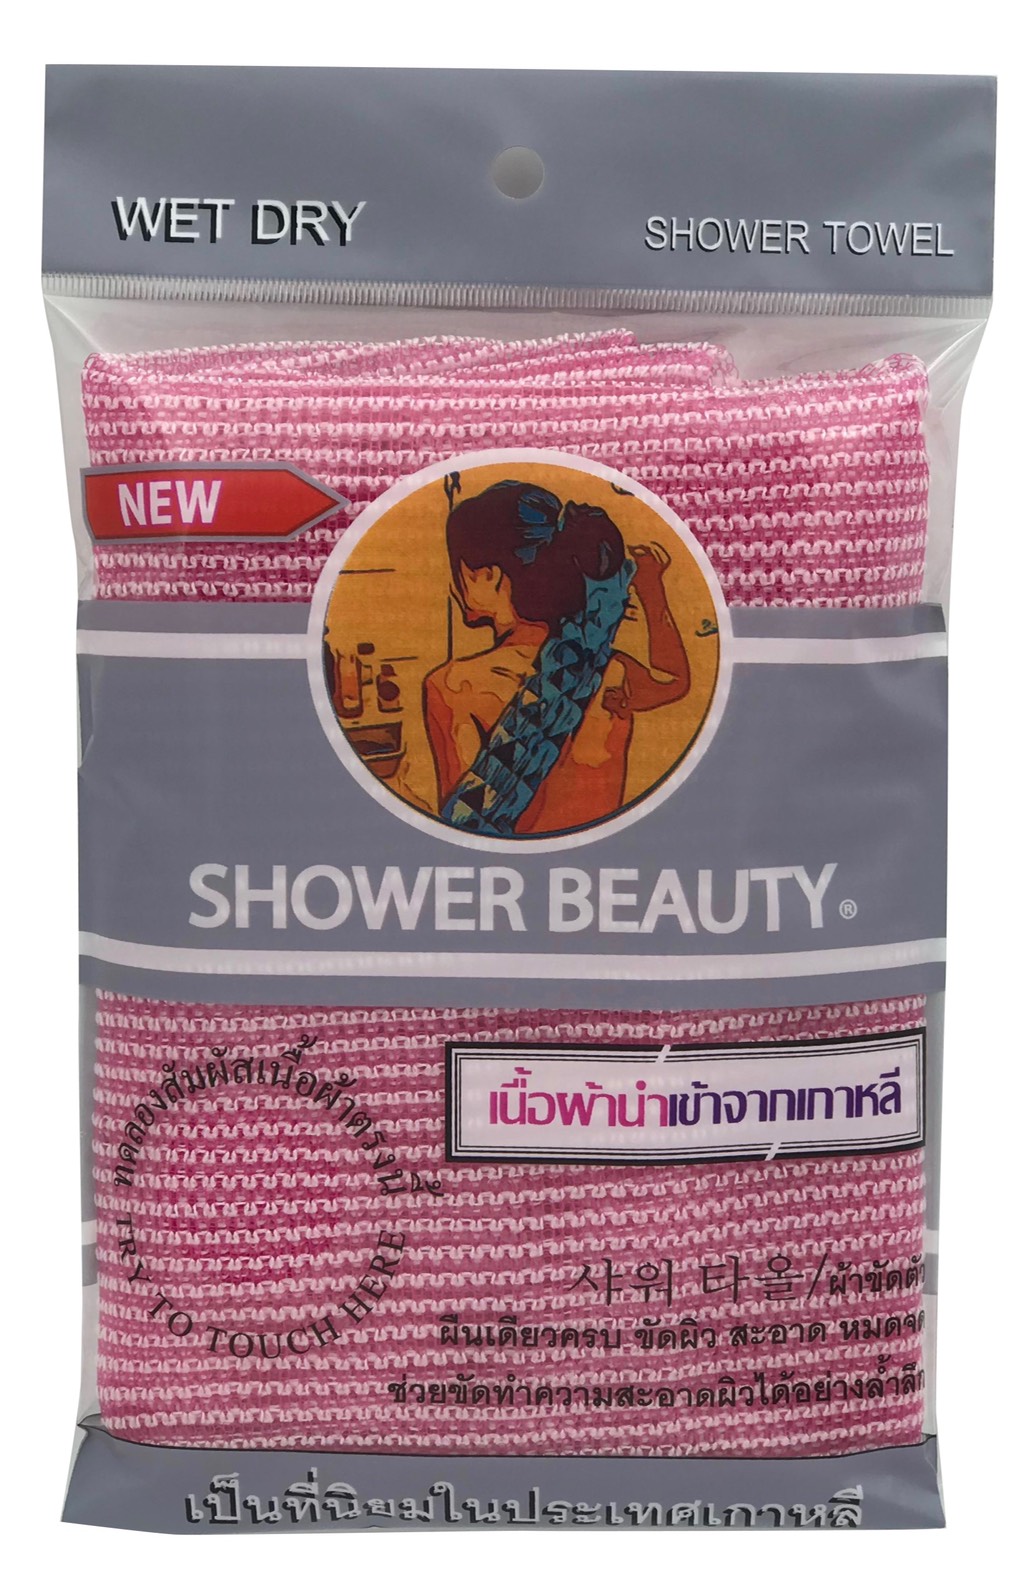 ผ้าขัดผิวกาย ขัดผิวสะอาดล้ำลึกแม้ในจุดที่ยากต่อการขัด PINK (Double weave)ขนาด 28X90cm. ชนิดนิ่ม [Soft type] scrub towel เนื้อผ้านำเข้าจากเกาหลี